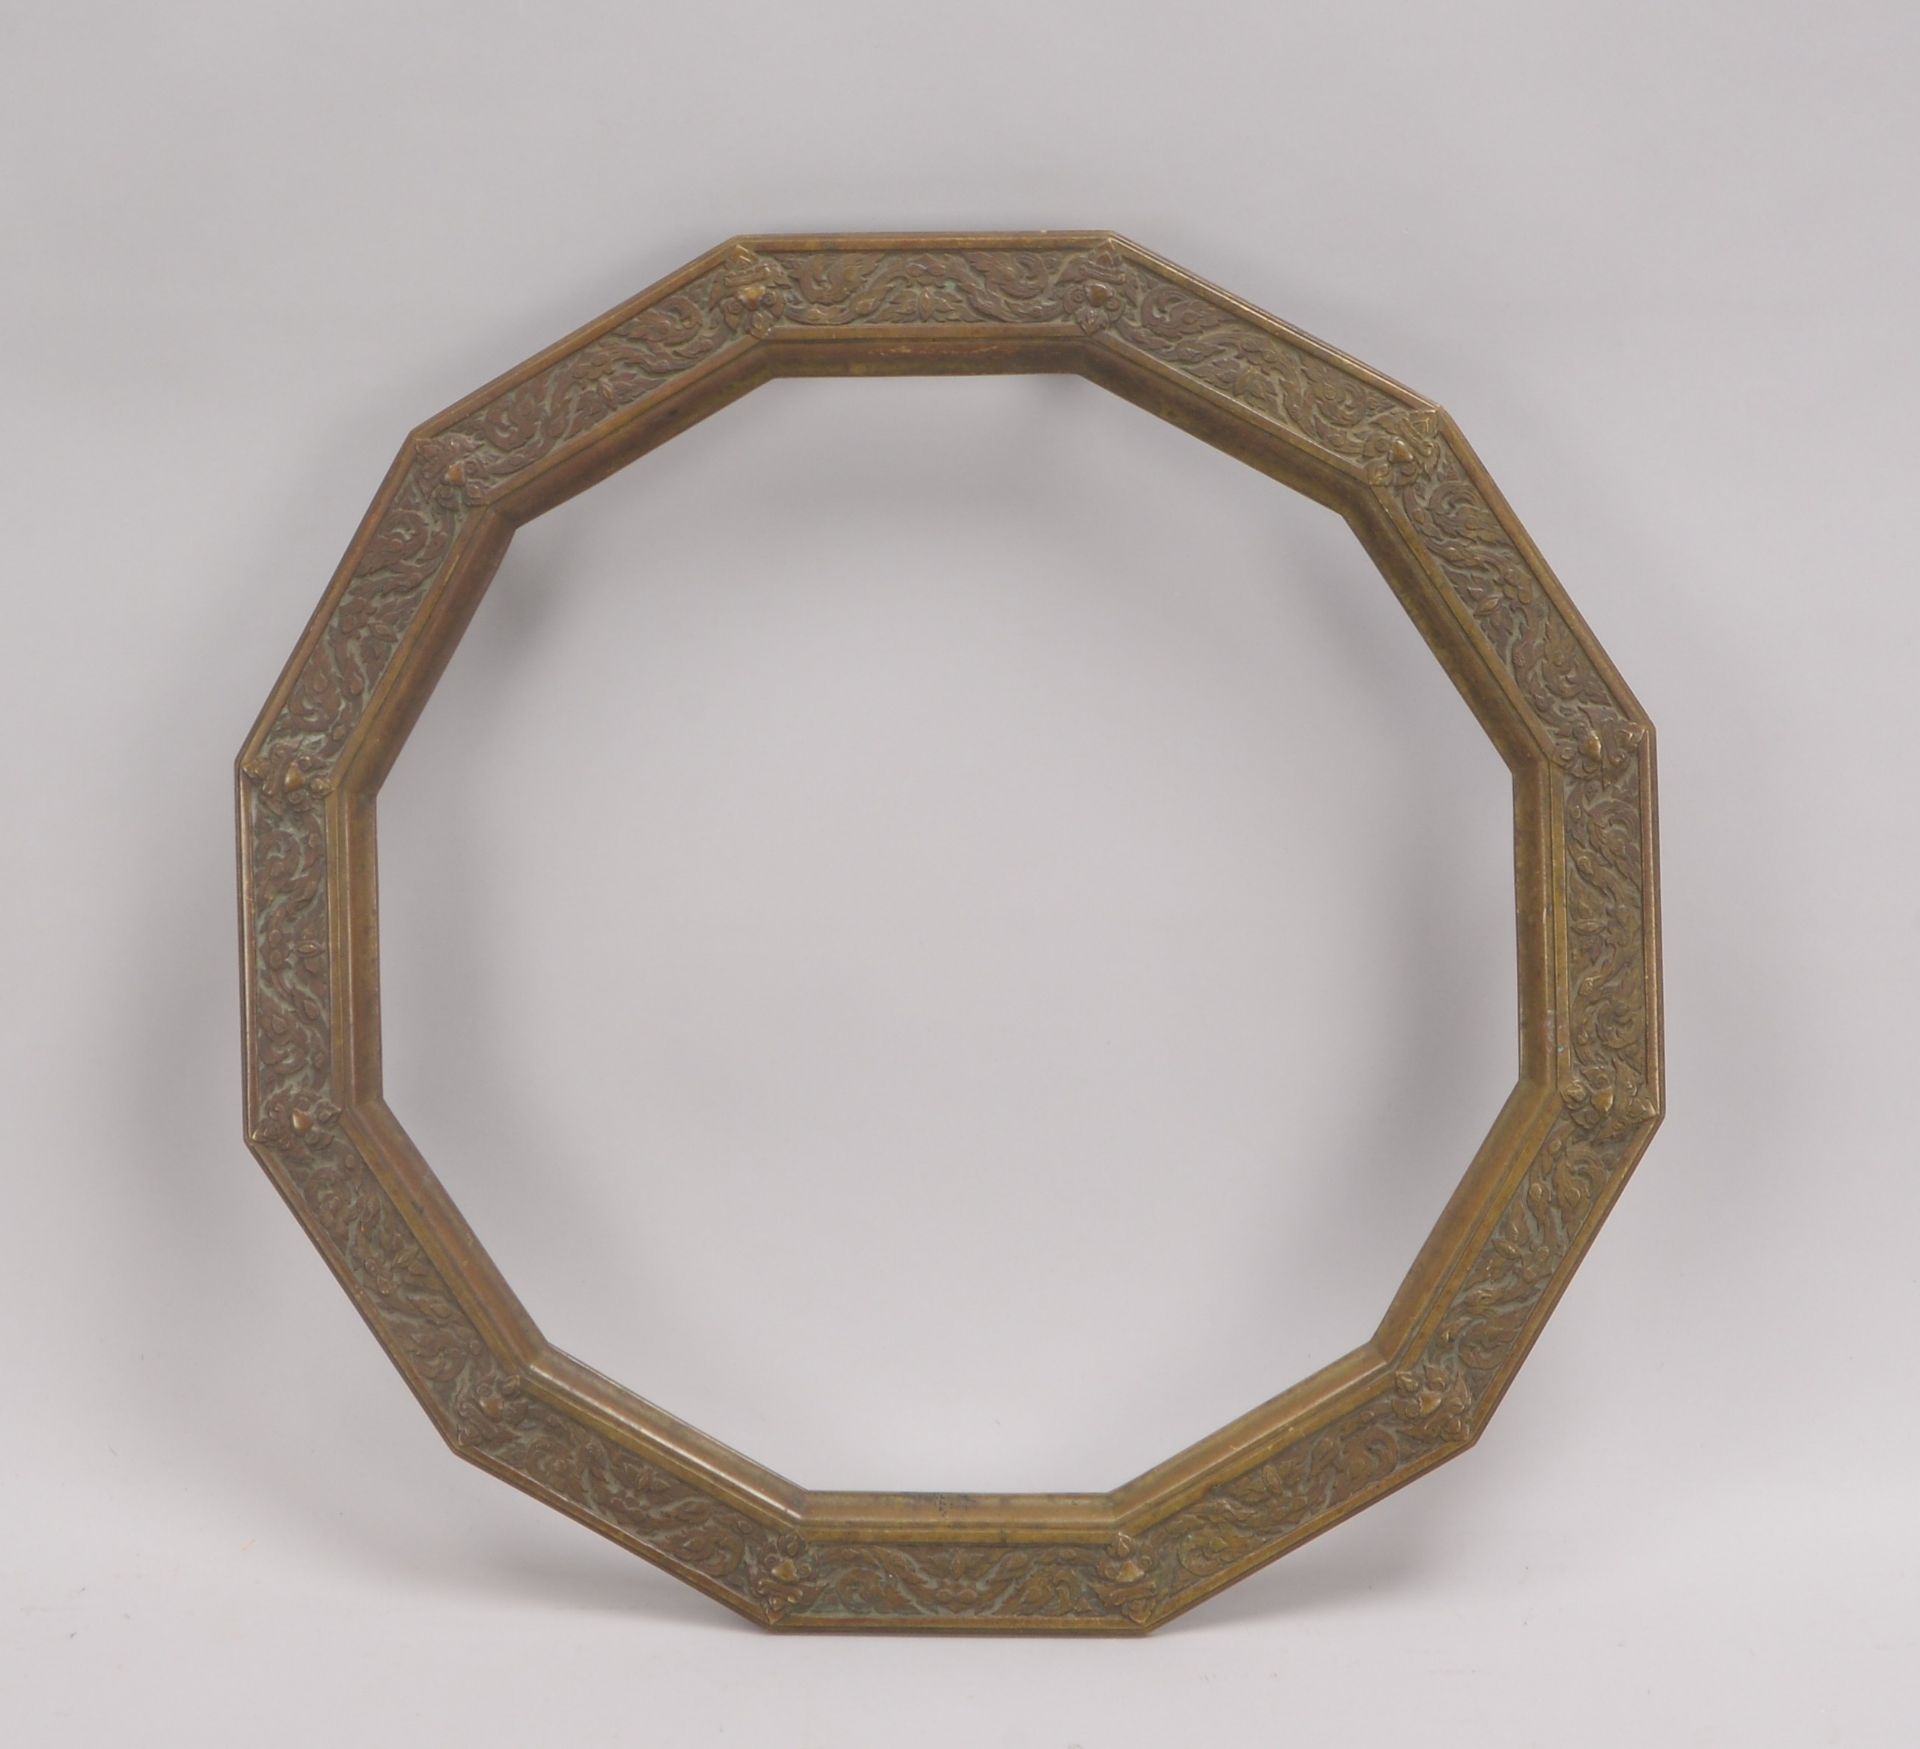 Bronze-Rahmen (China), 12-passig, mit Reliefdekor, Rahmen auf 6x Füßen; Durchmesser Ø 47,5 cm